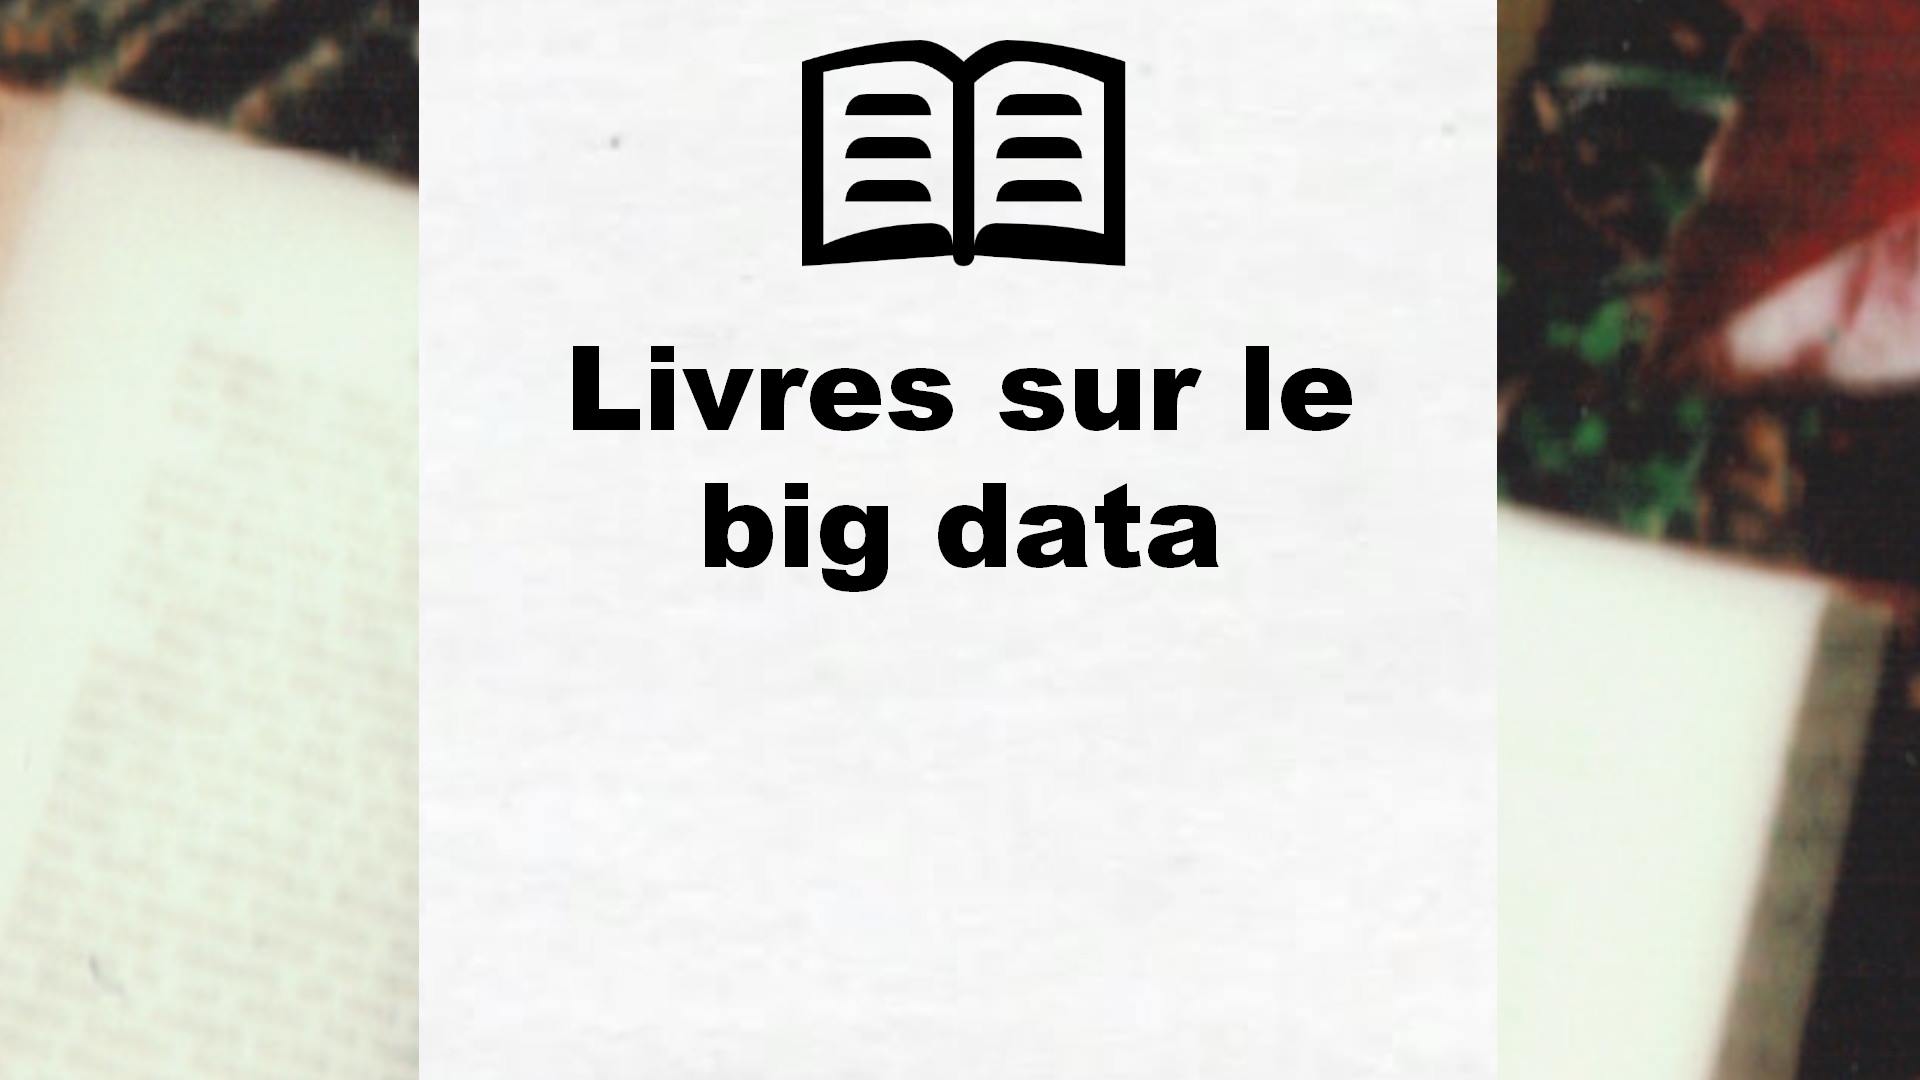 Livres sur le big data